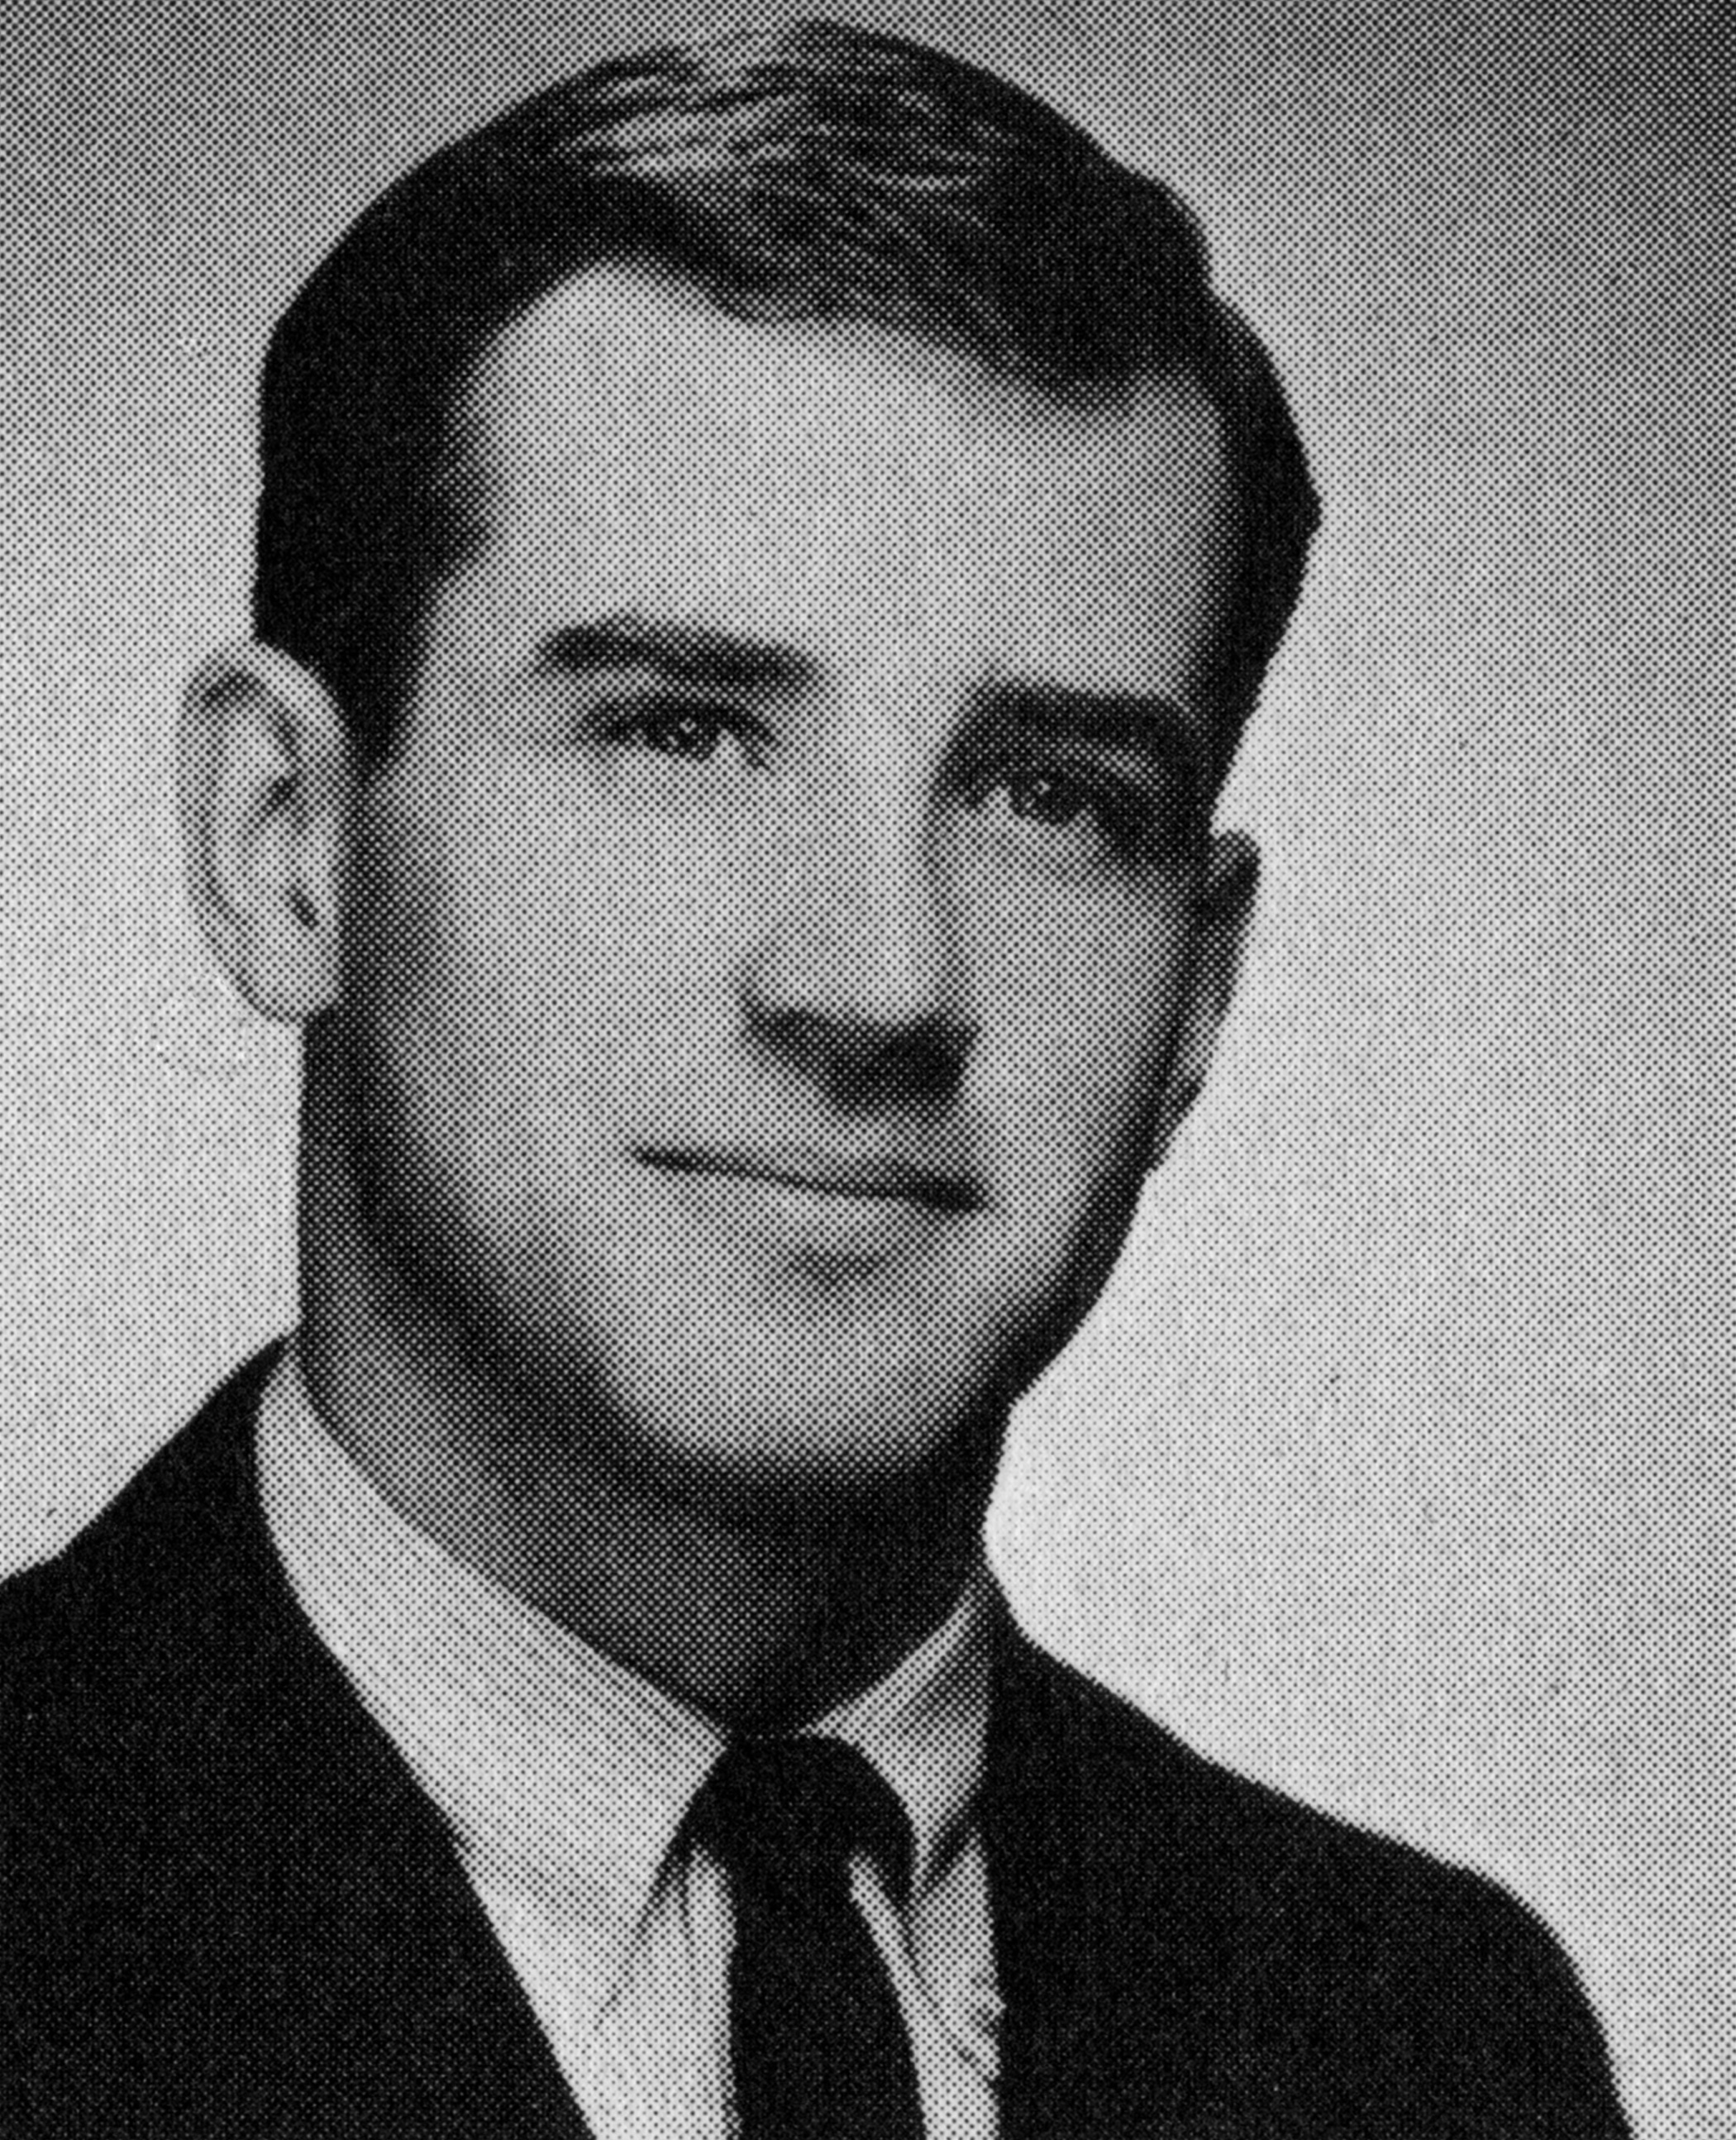 Joe Biden in 1965 at the University of Delaware.